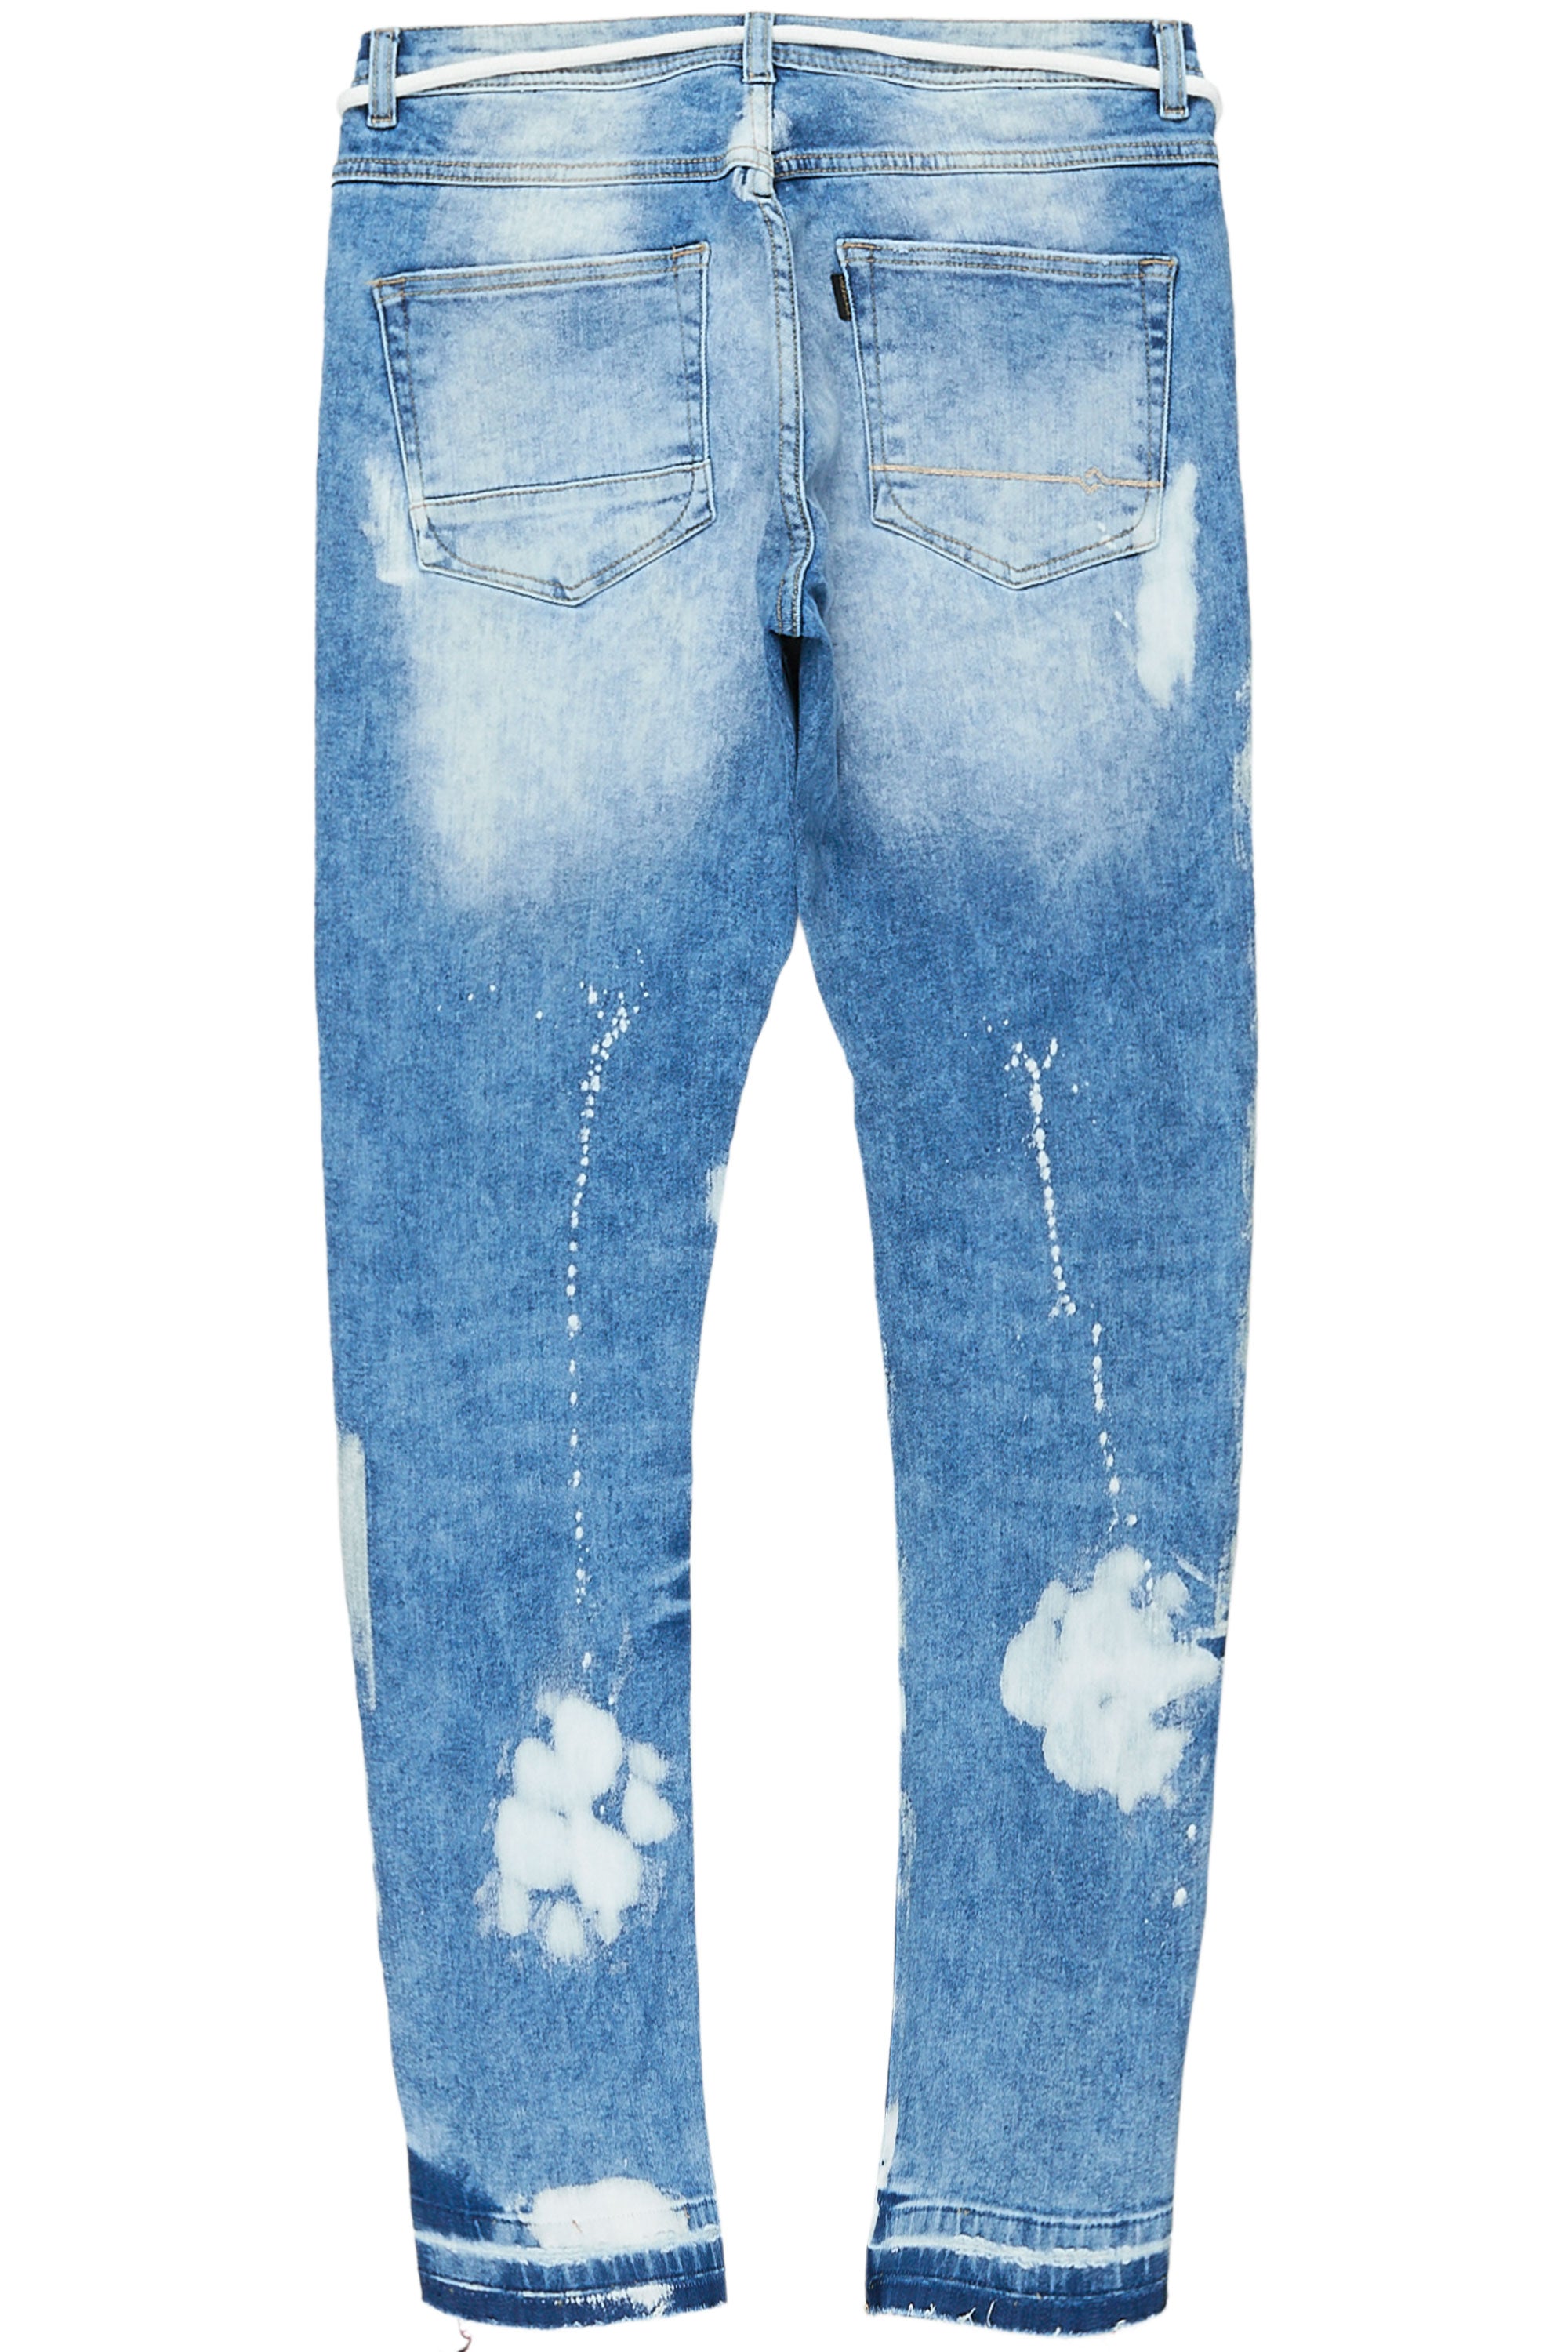 Lenox Light Blue 5 Pocket Jean